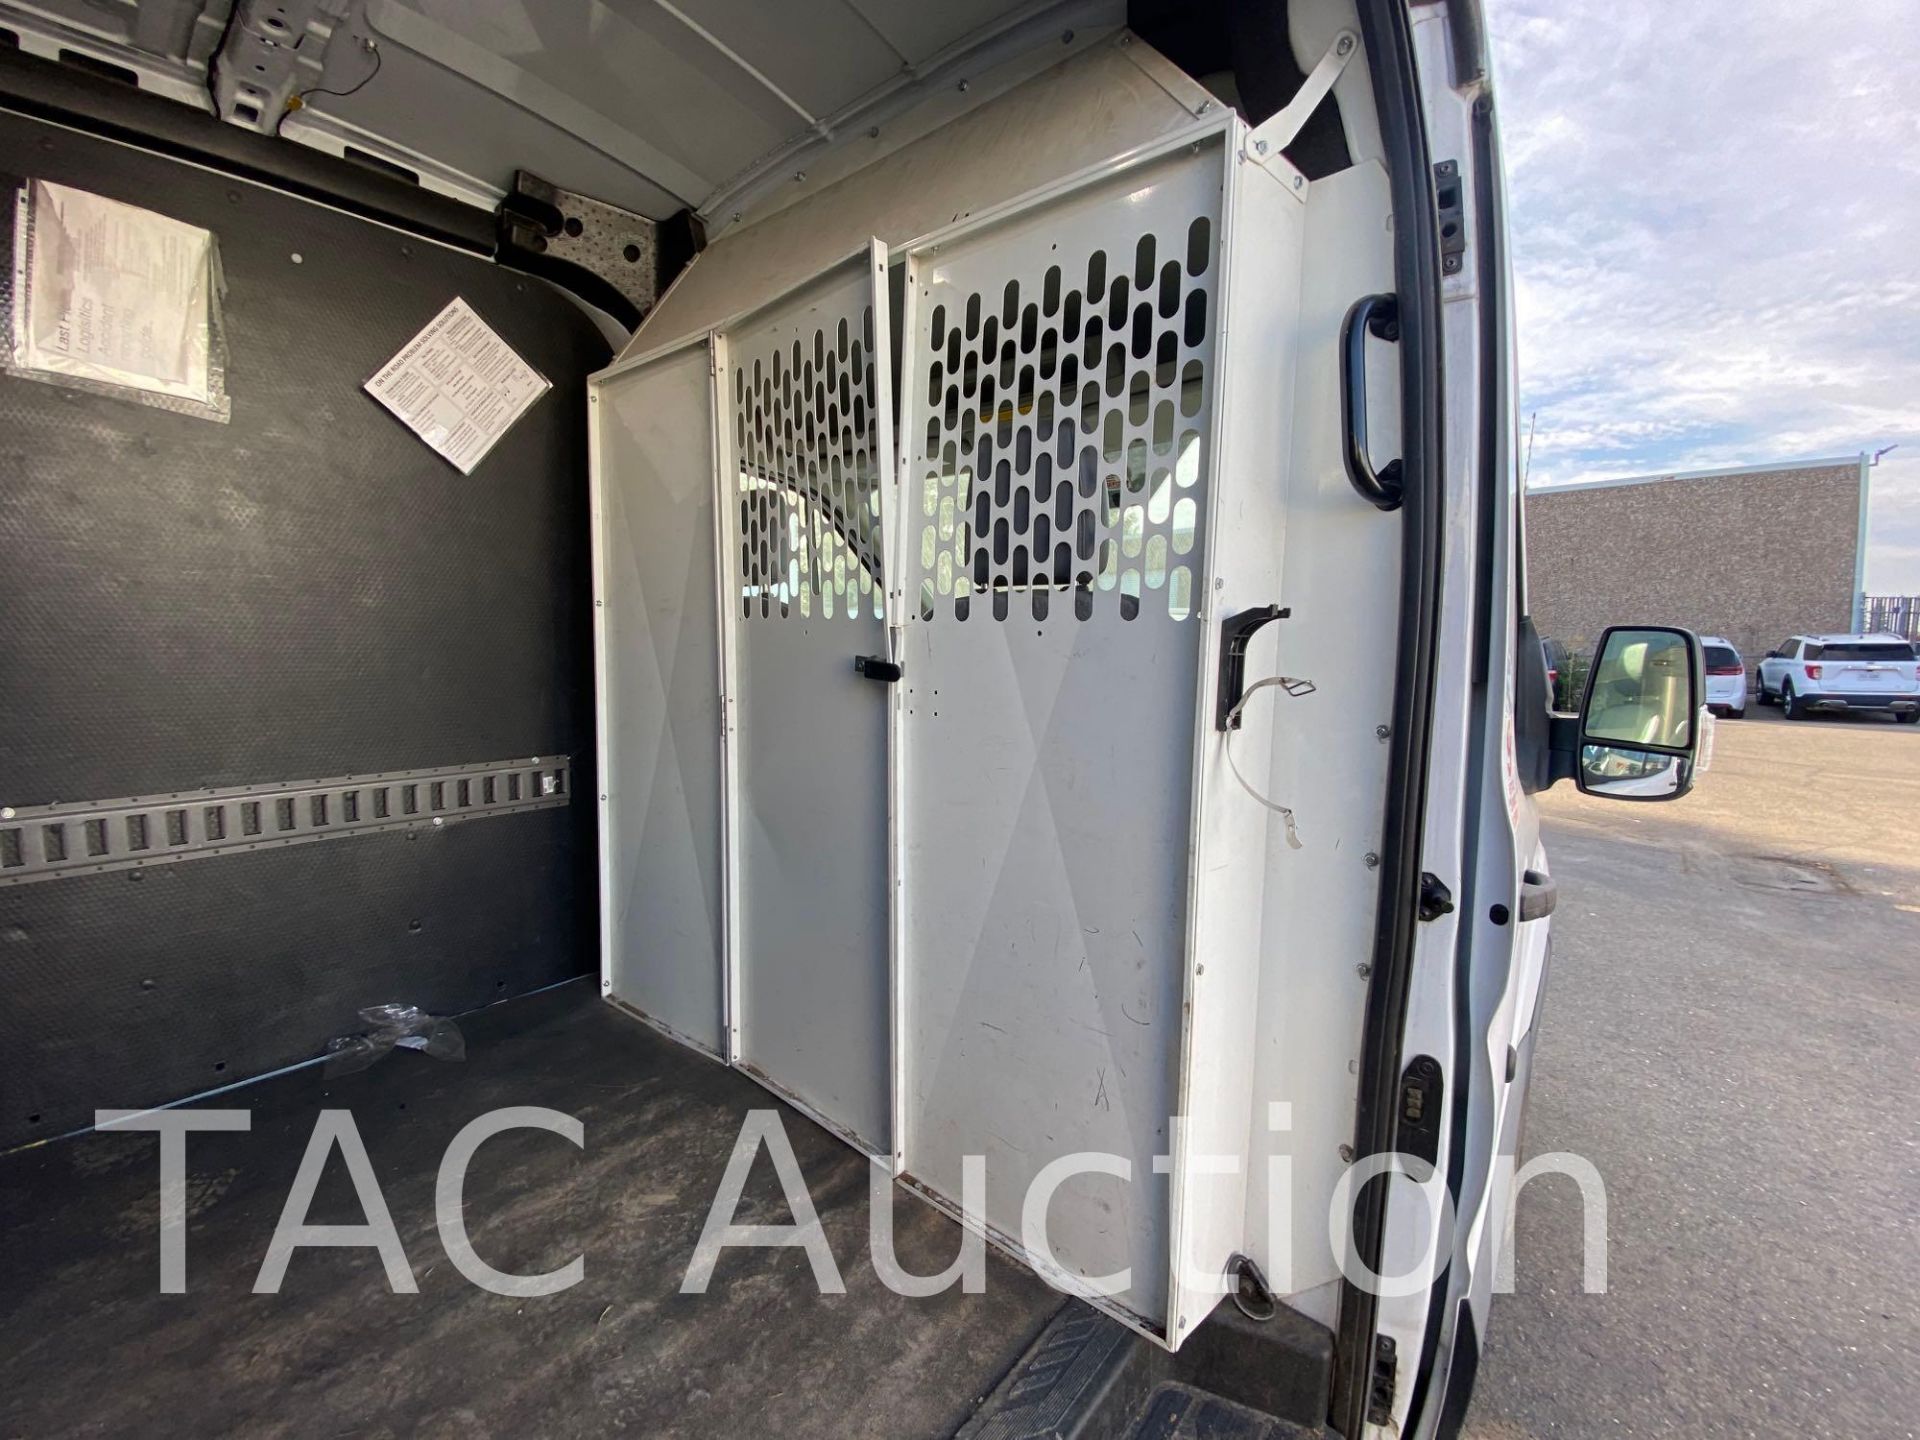 2018 Ford Transit 150 Cargo Van - Image 26 of 106